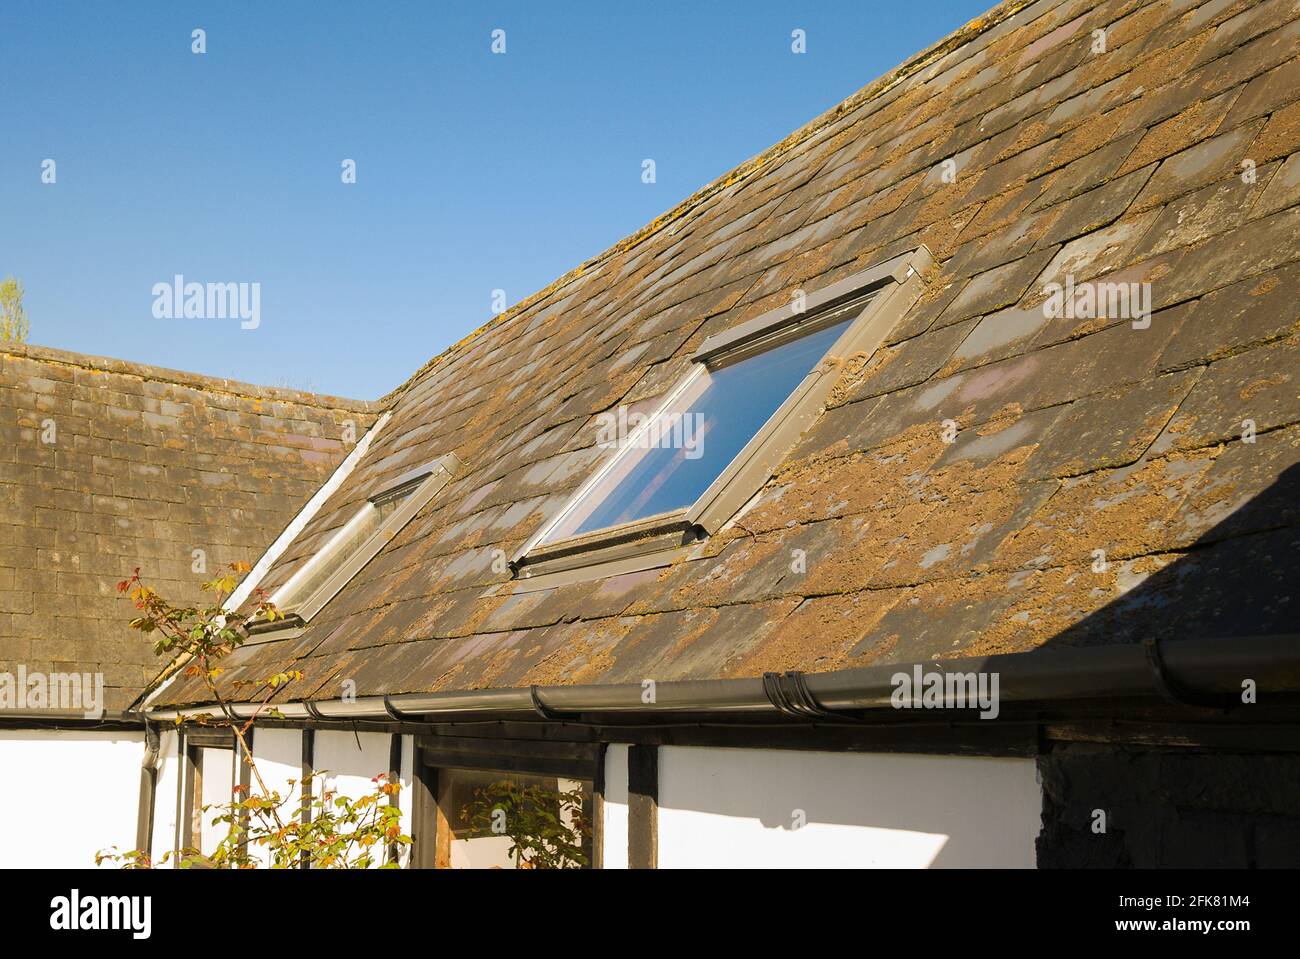 Un antiguo granero con tejado de pizarra cubierto de musgos y líquenes. Tenga en cuenta la adición posterior de dos luces de techo en el Reino Unido Foto de stock